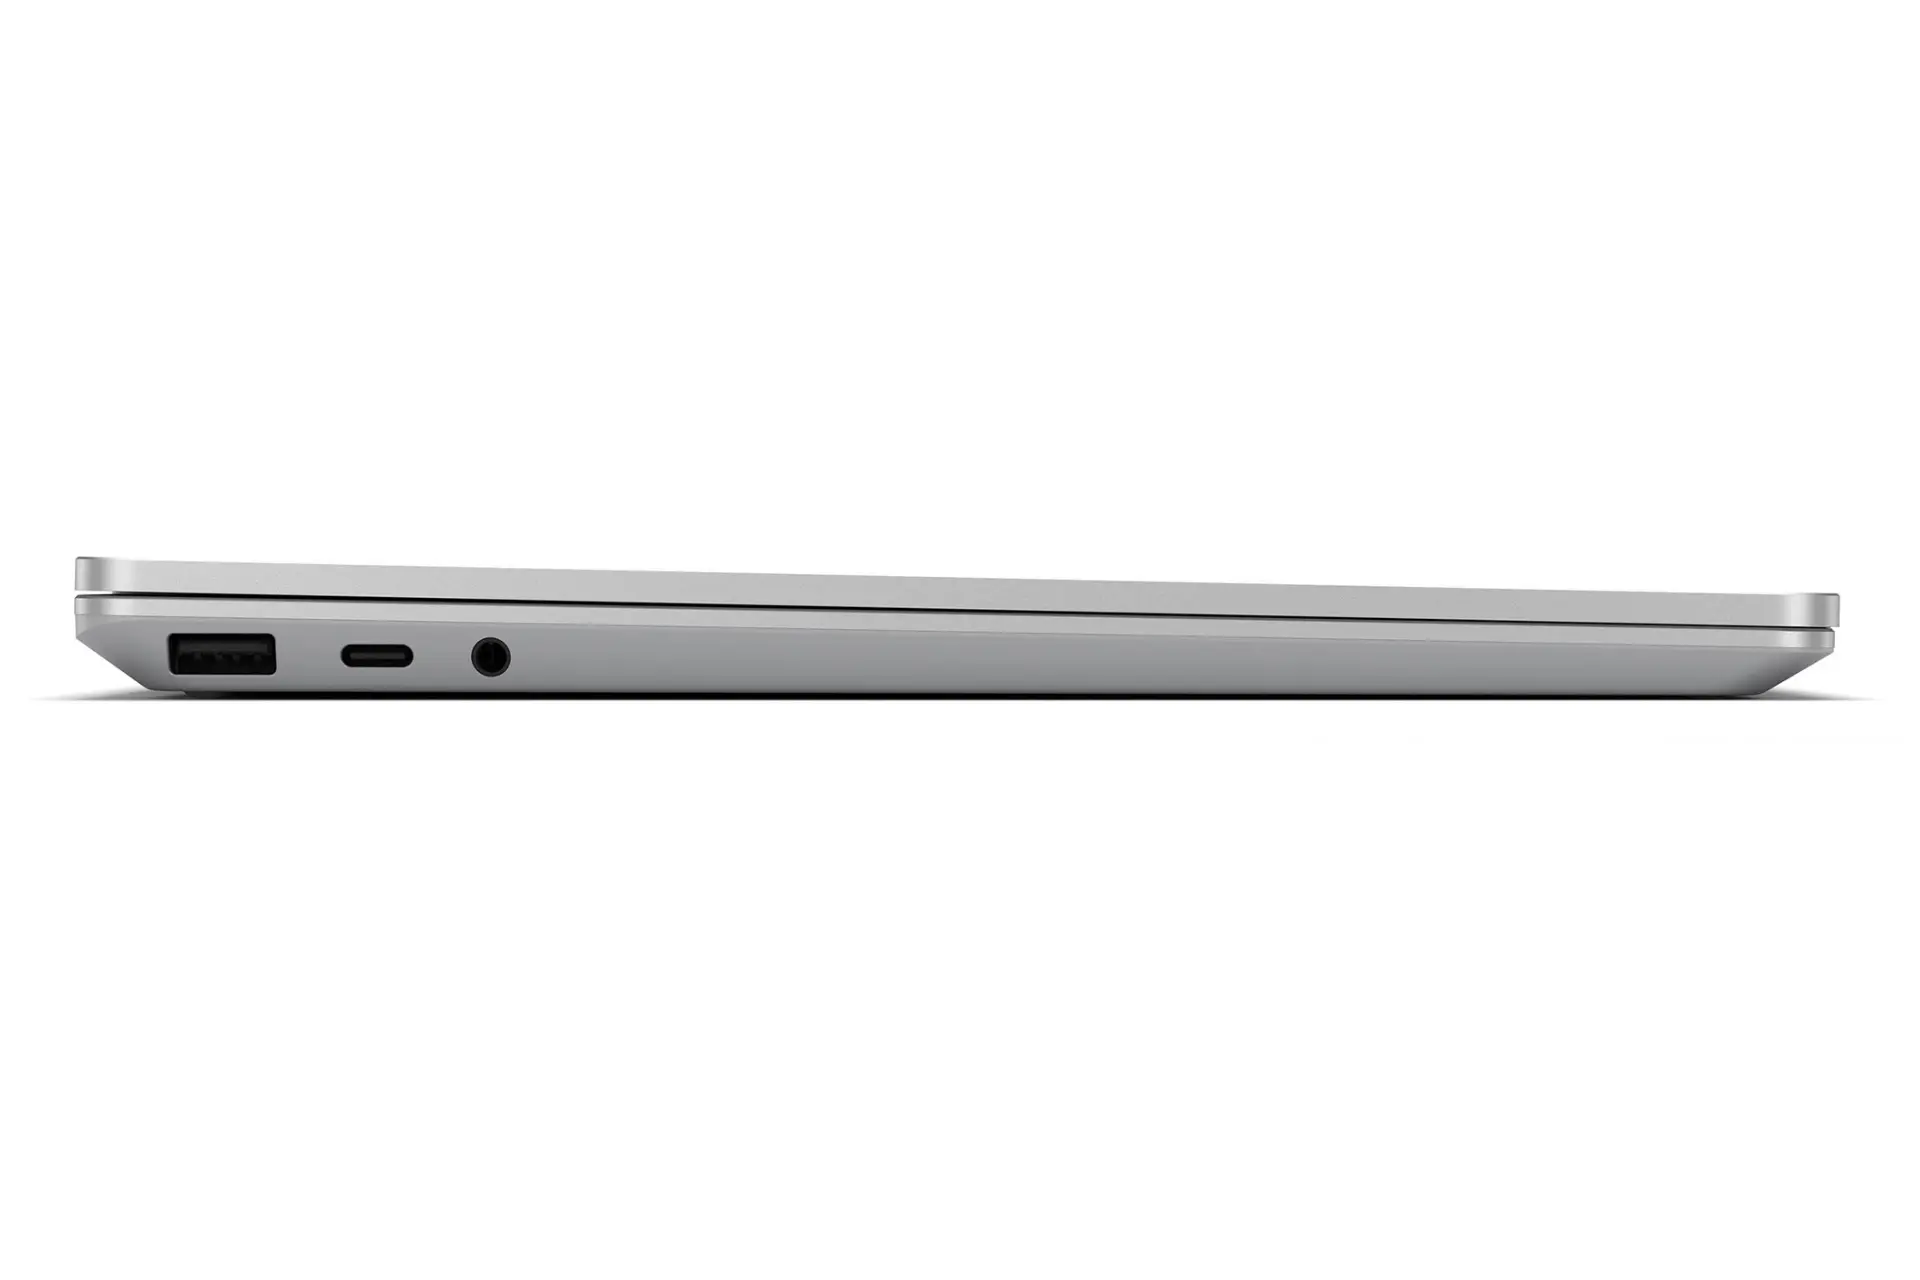 نمای کنار مایکروسافت سرفیس لپ تاپ گو رنگ سیلور در حالت بسته